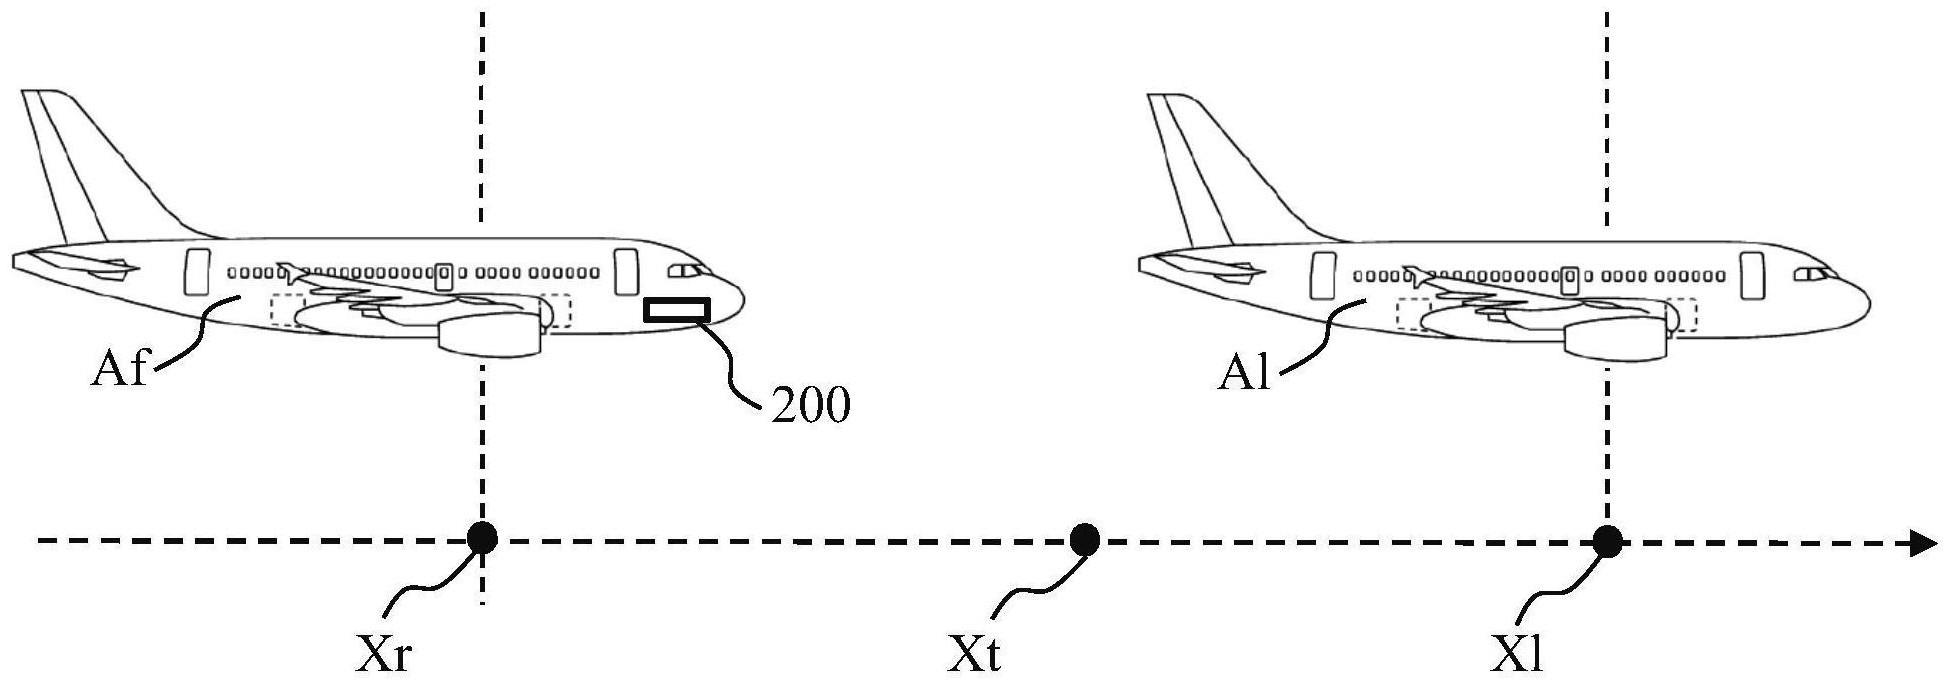 用于管理跟随飞行器相对于领航飞行器的纵向位置的方法与流程